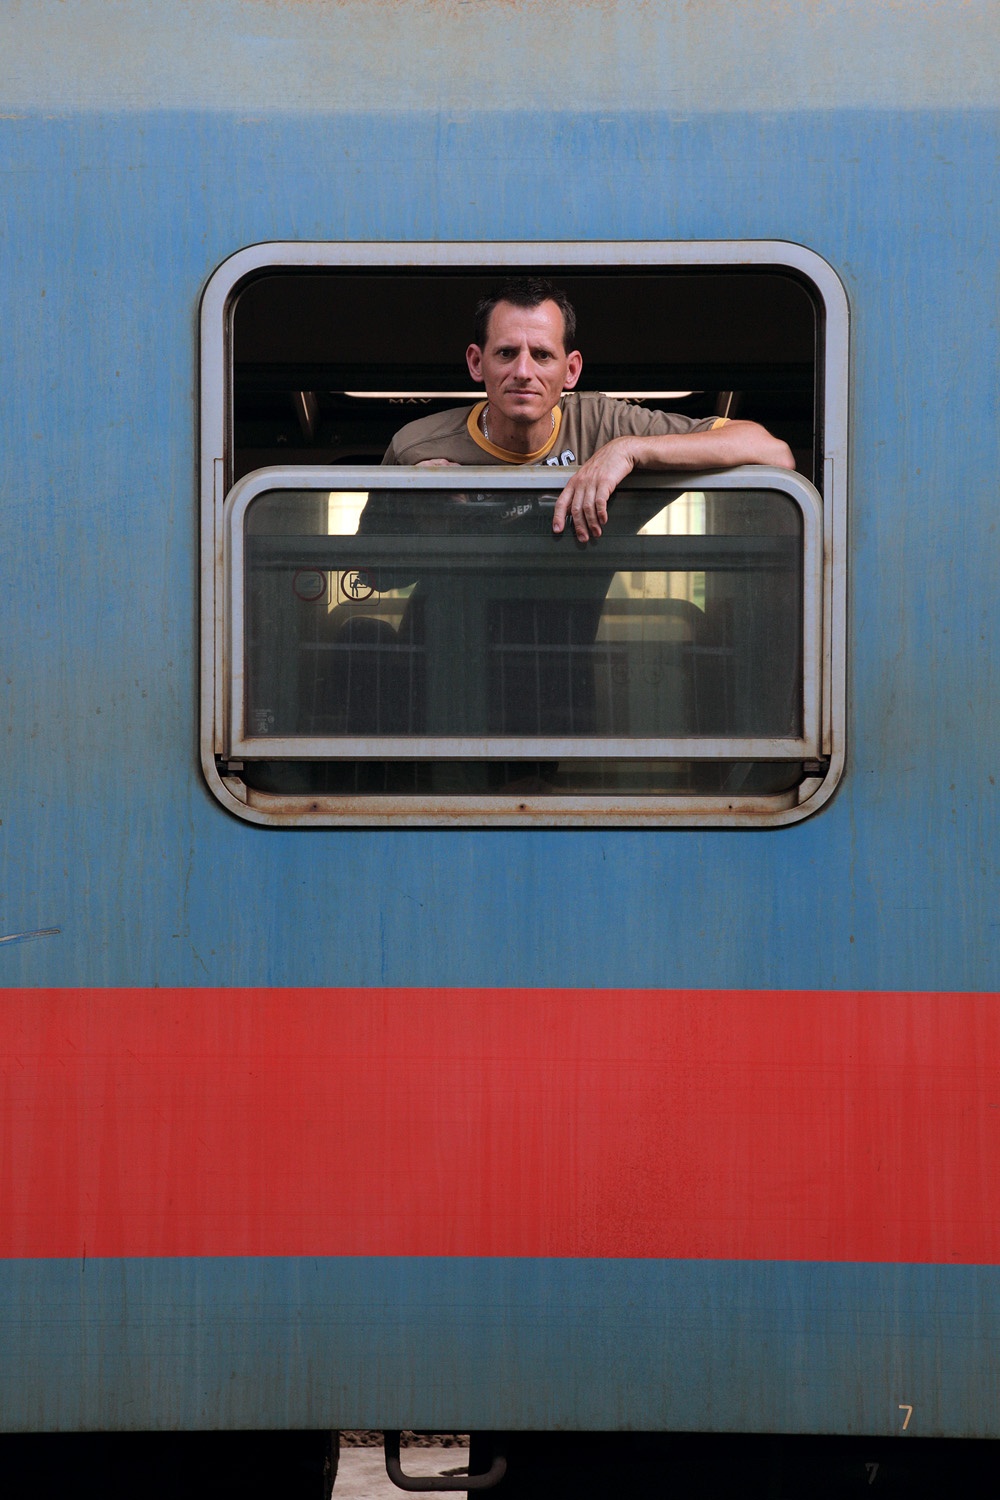 bill-hocker-nyugati-train-station-budapest-hungary-2013